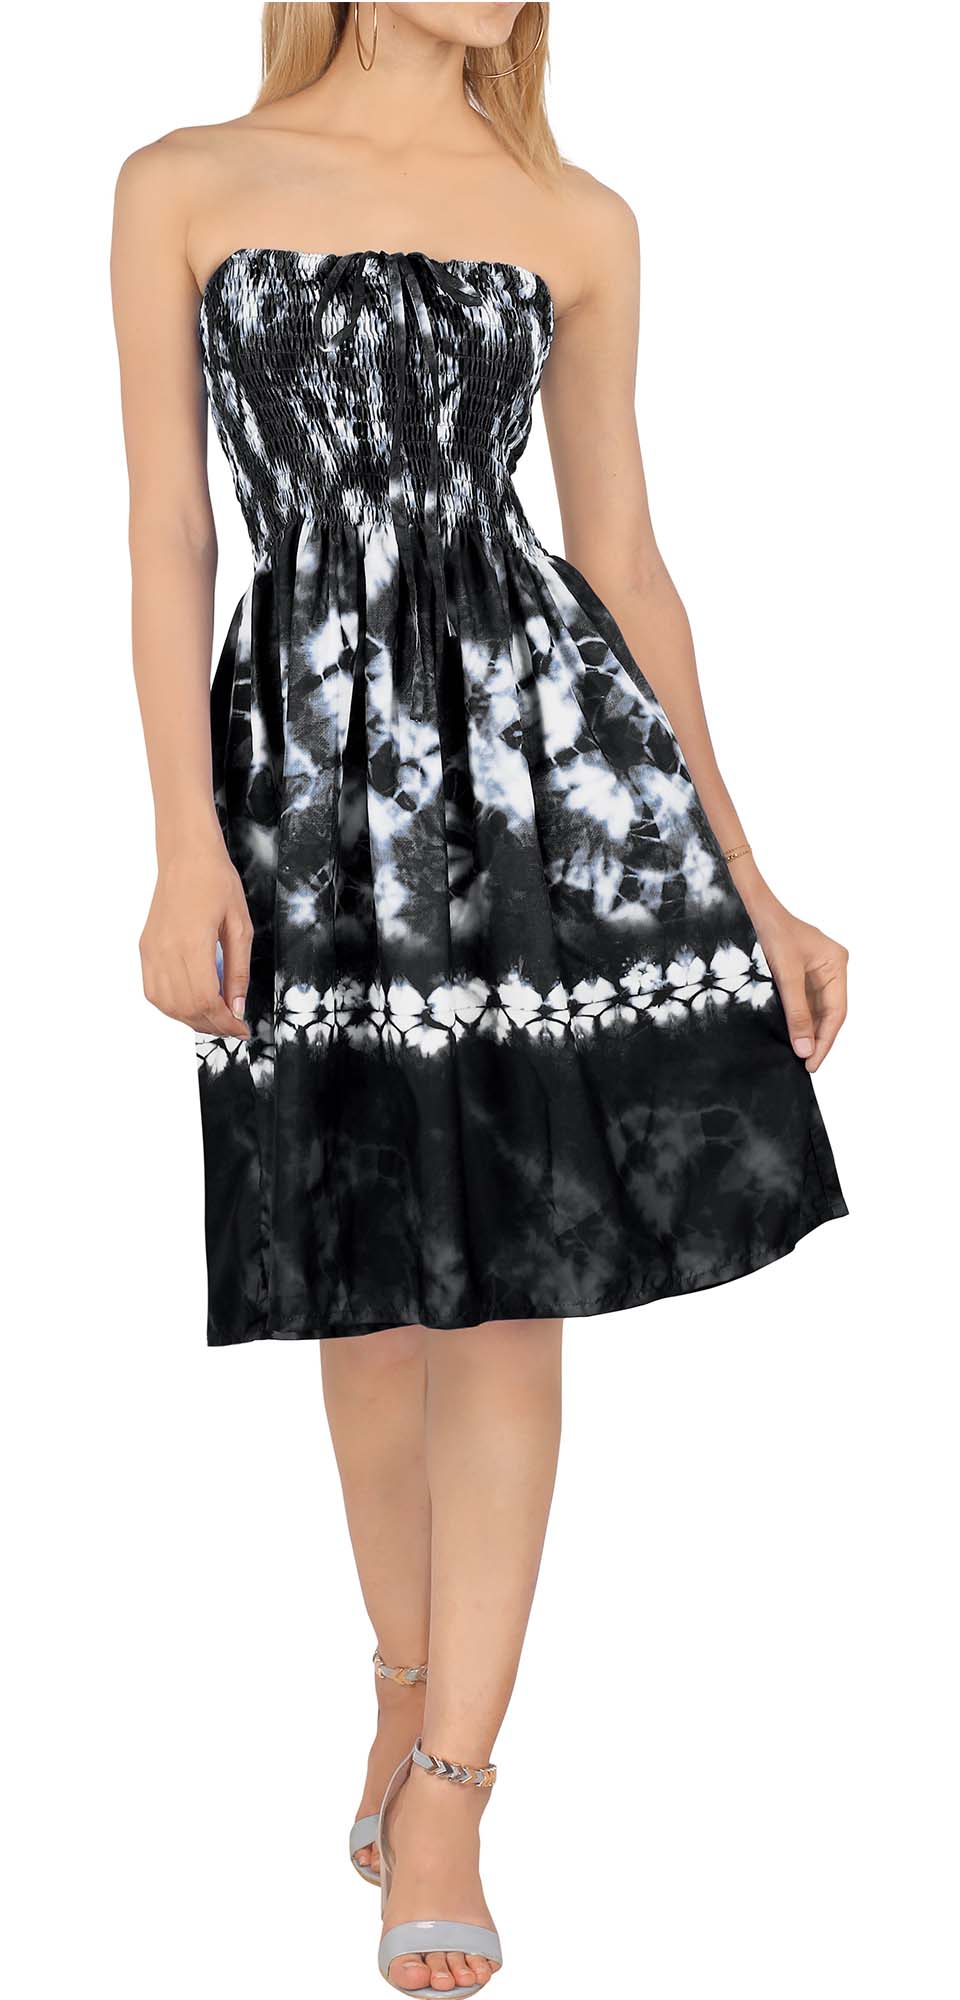 Rosette Tiedye Short Dress for women